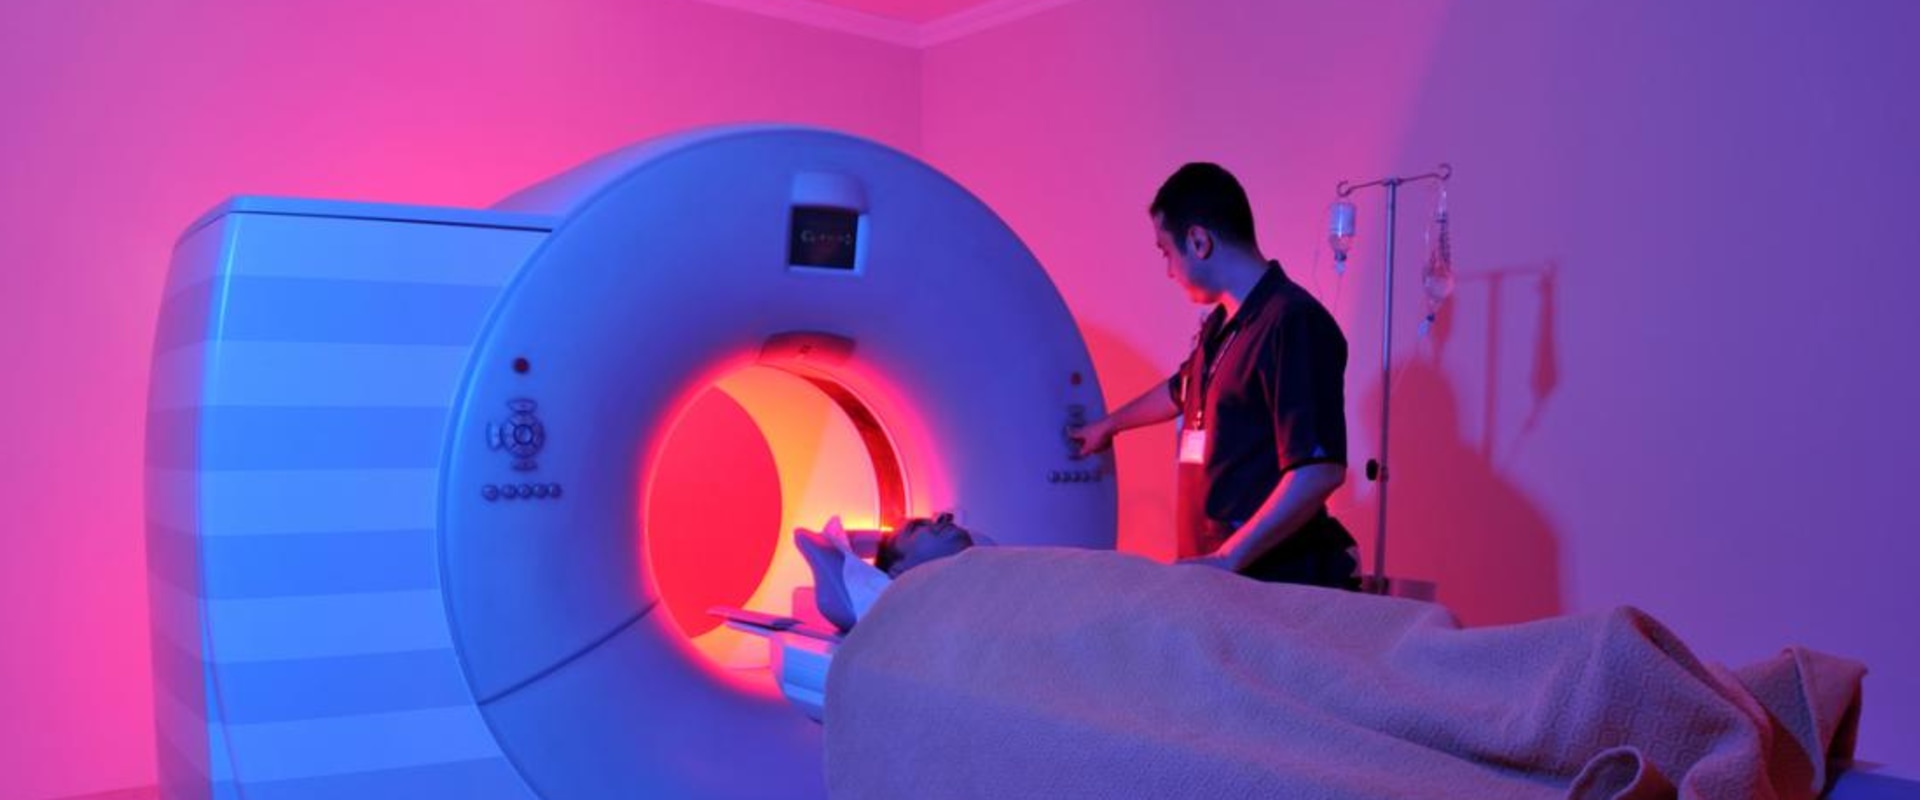 MRI Scans: An Overview